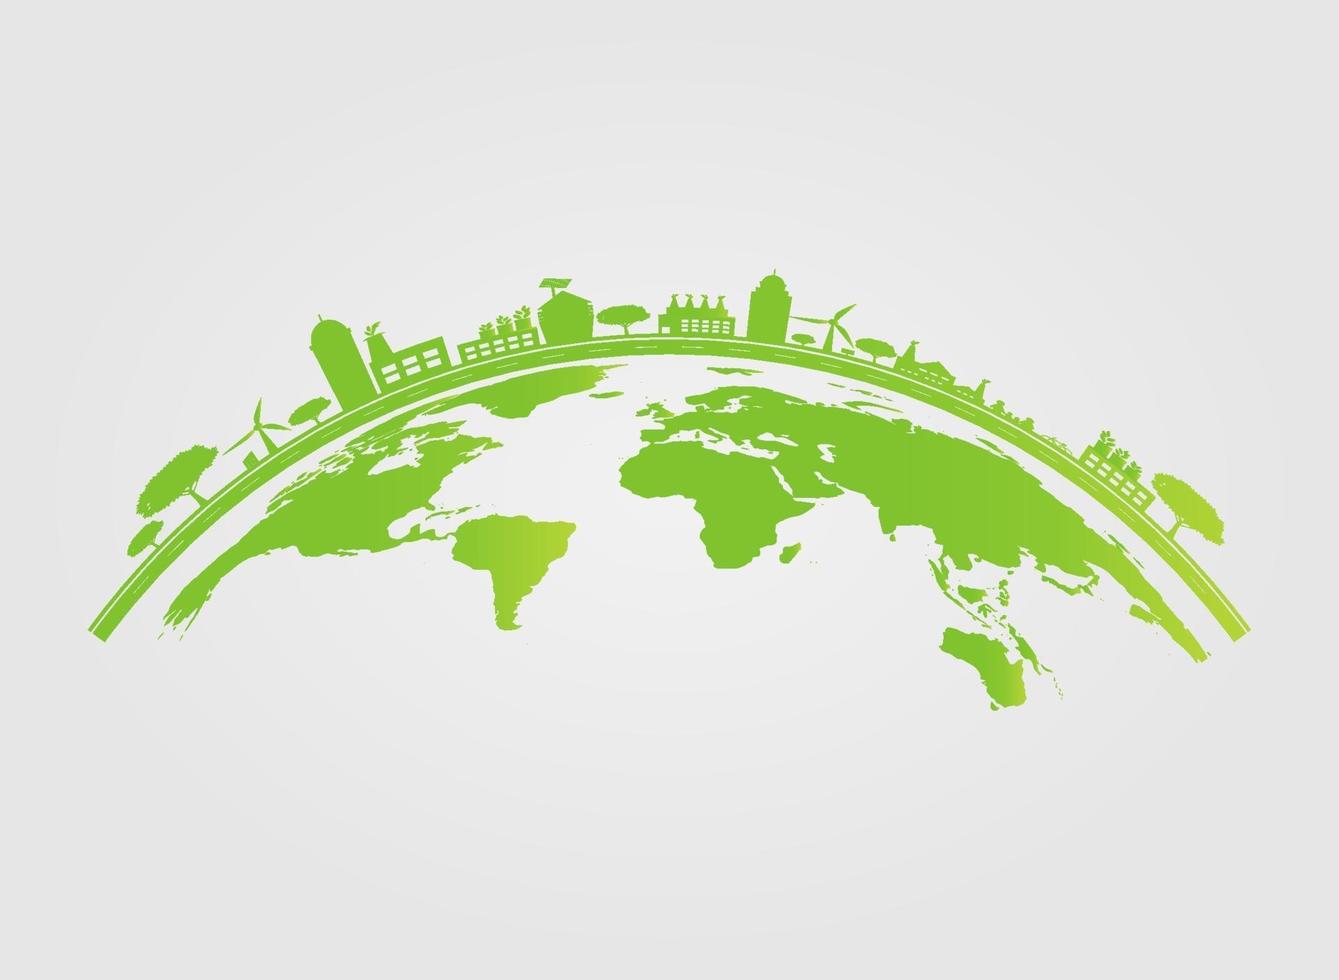 ecologie. groene steden helpen de wereld met milieuvriendelijke conceptideeën. vector illustratie